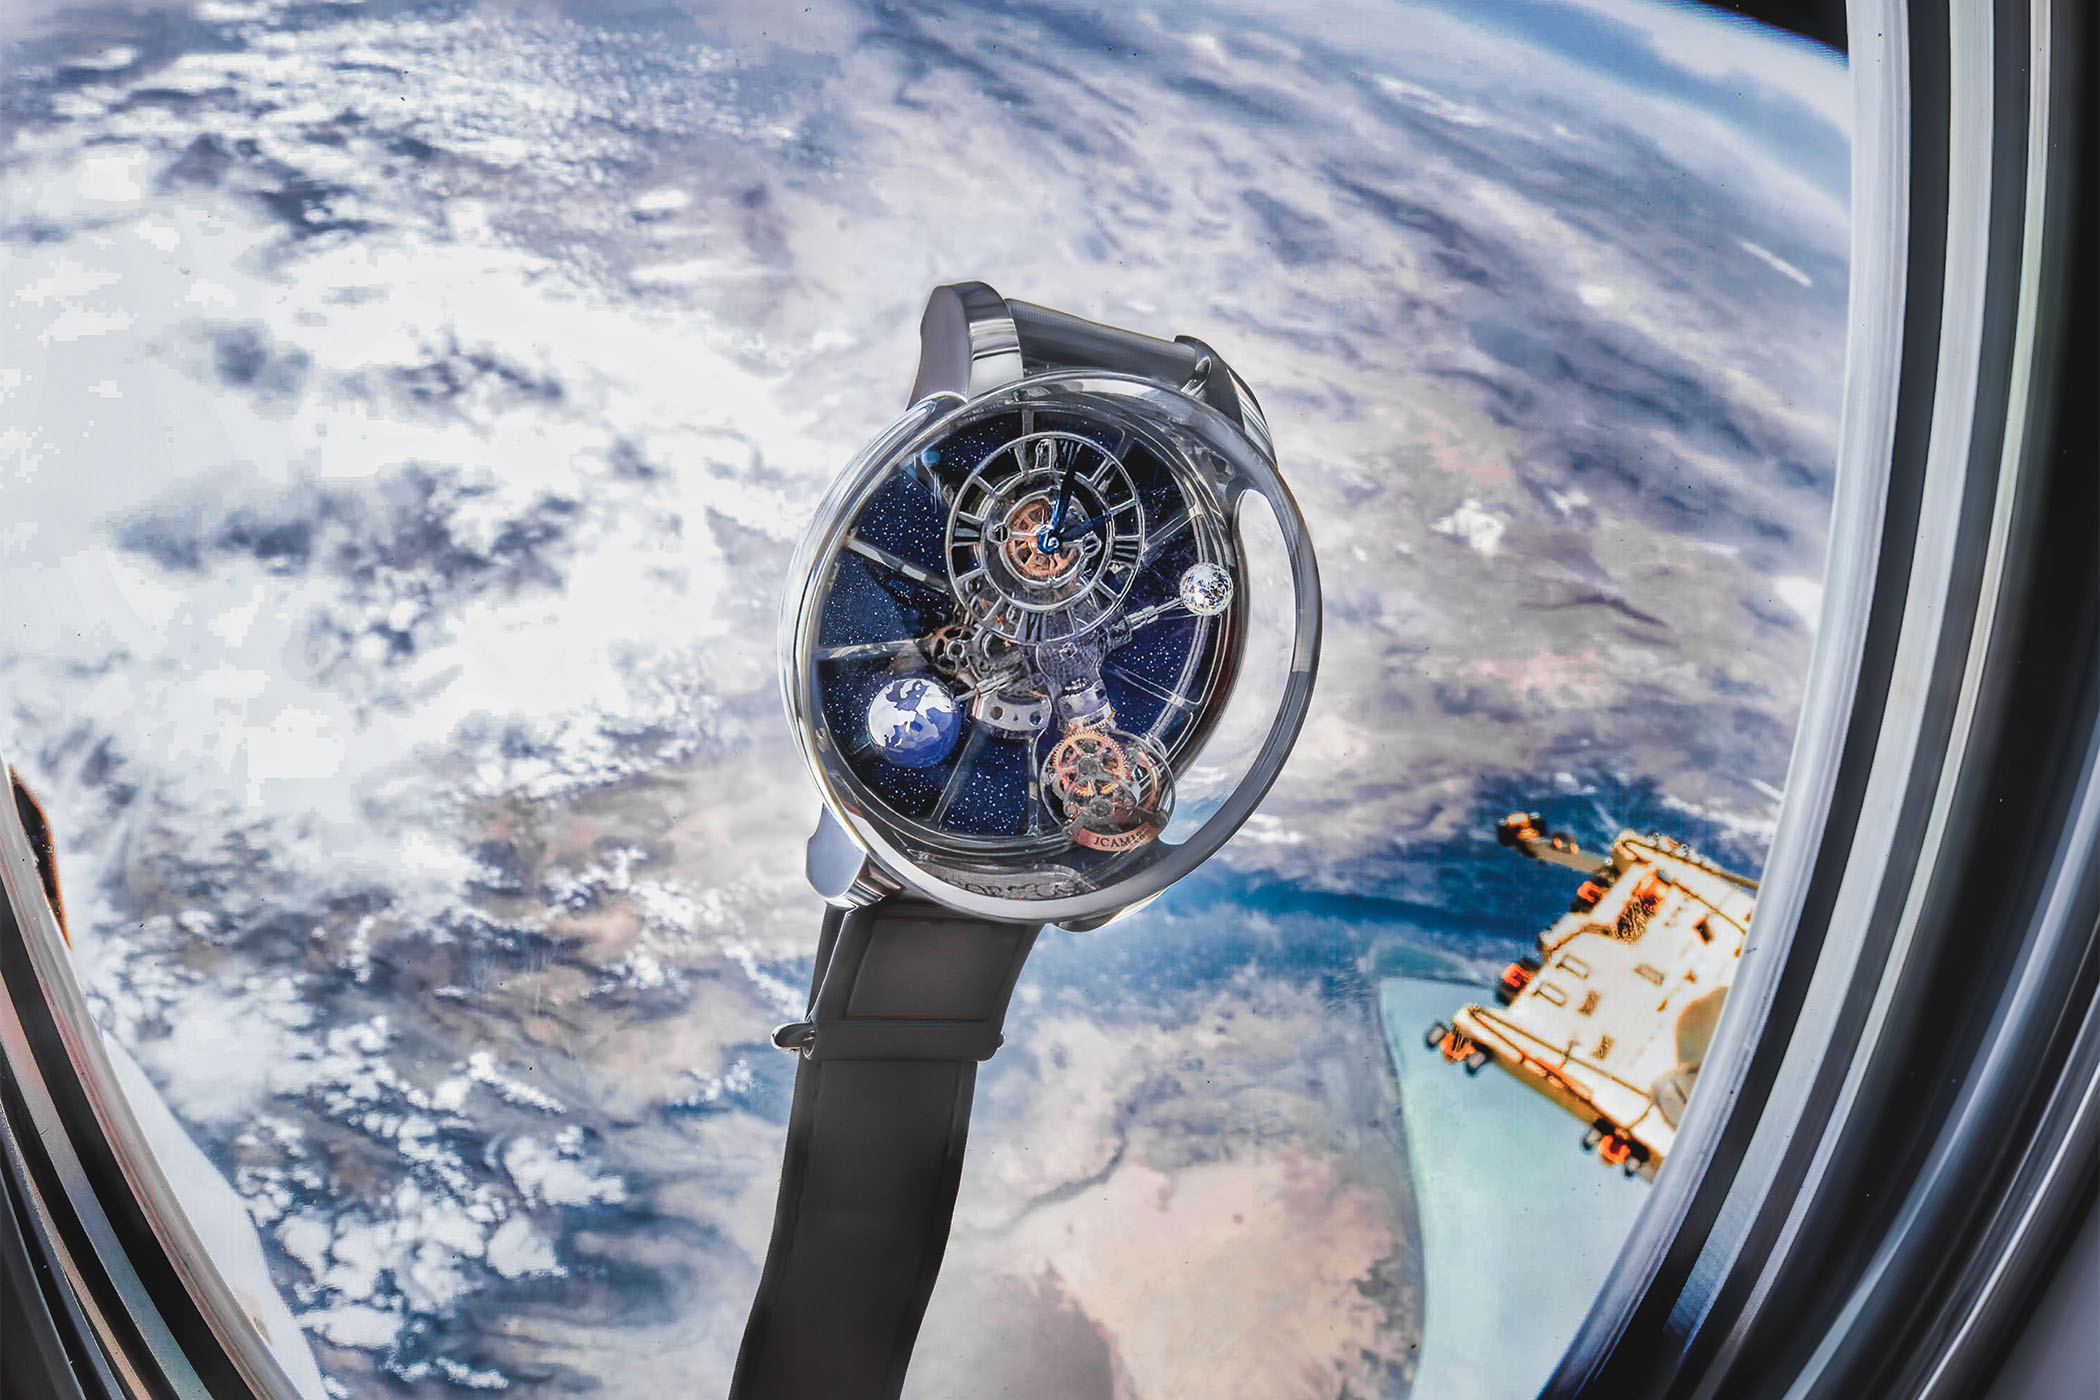 Mẫu đồng hồ Jacob & Co. Astronomia Tourbillon chính thức tiến vào không gian 